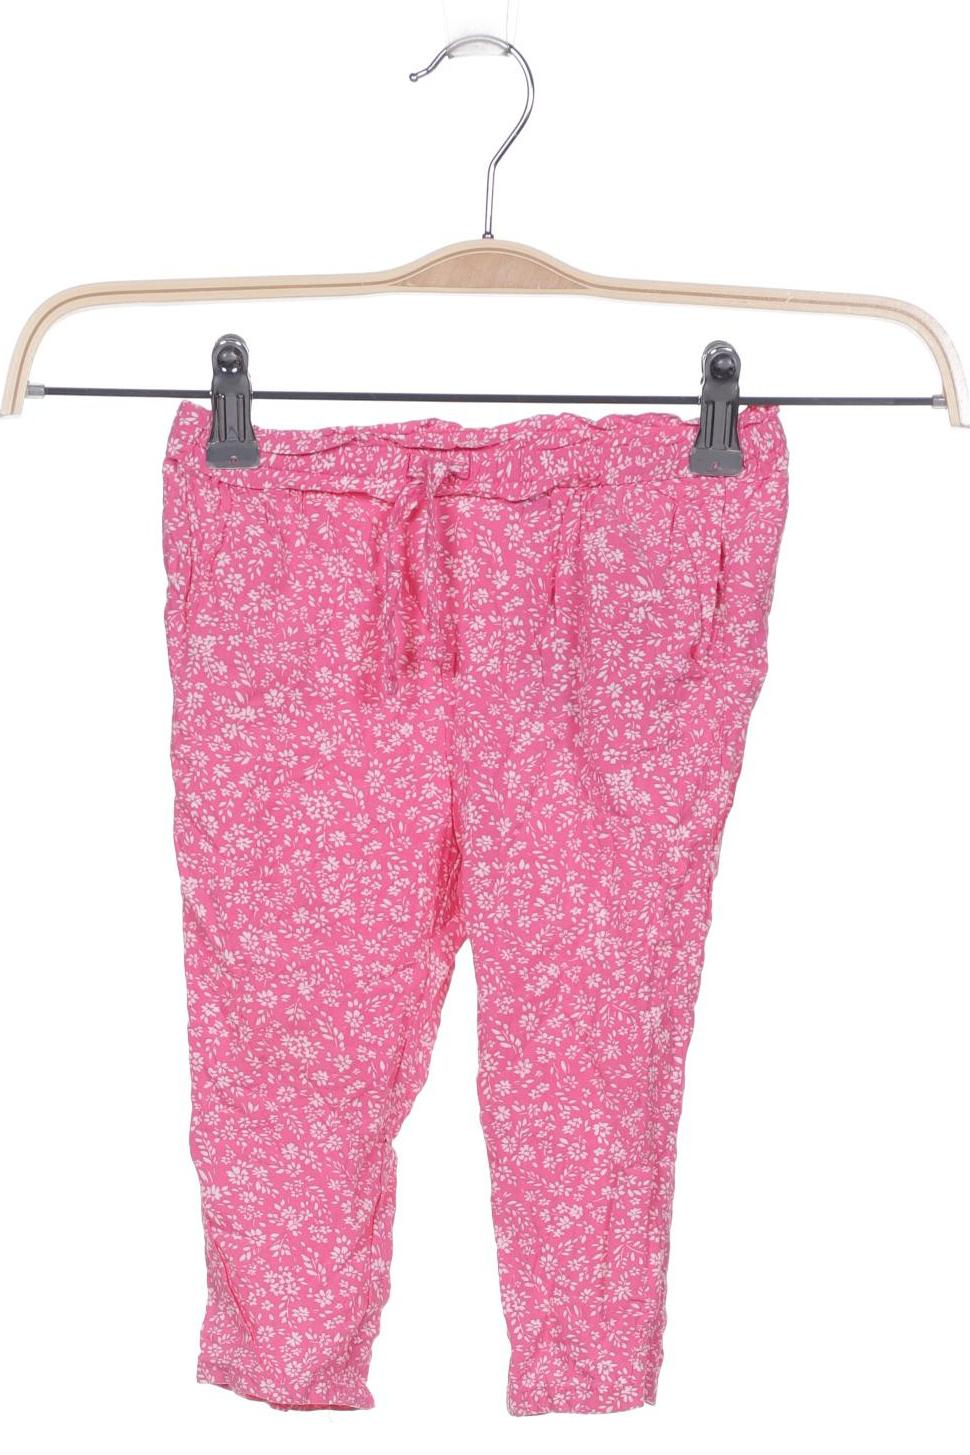 GAP Damen Shorts, pink, Gr. 92 von GAP